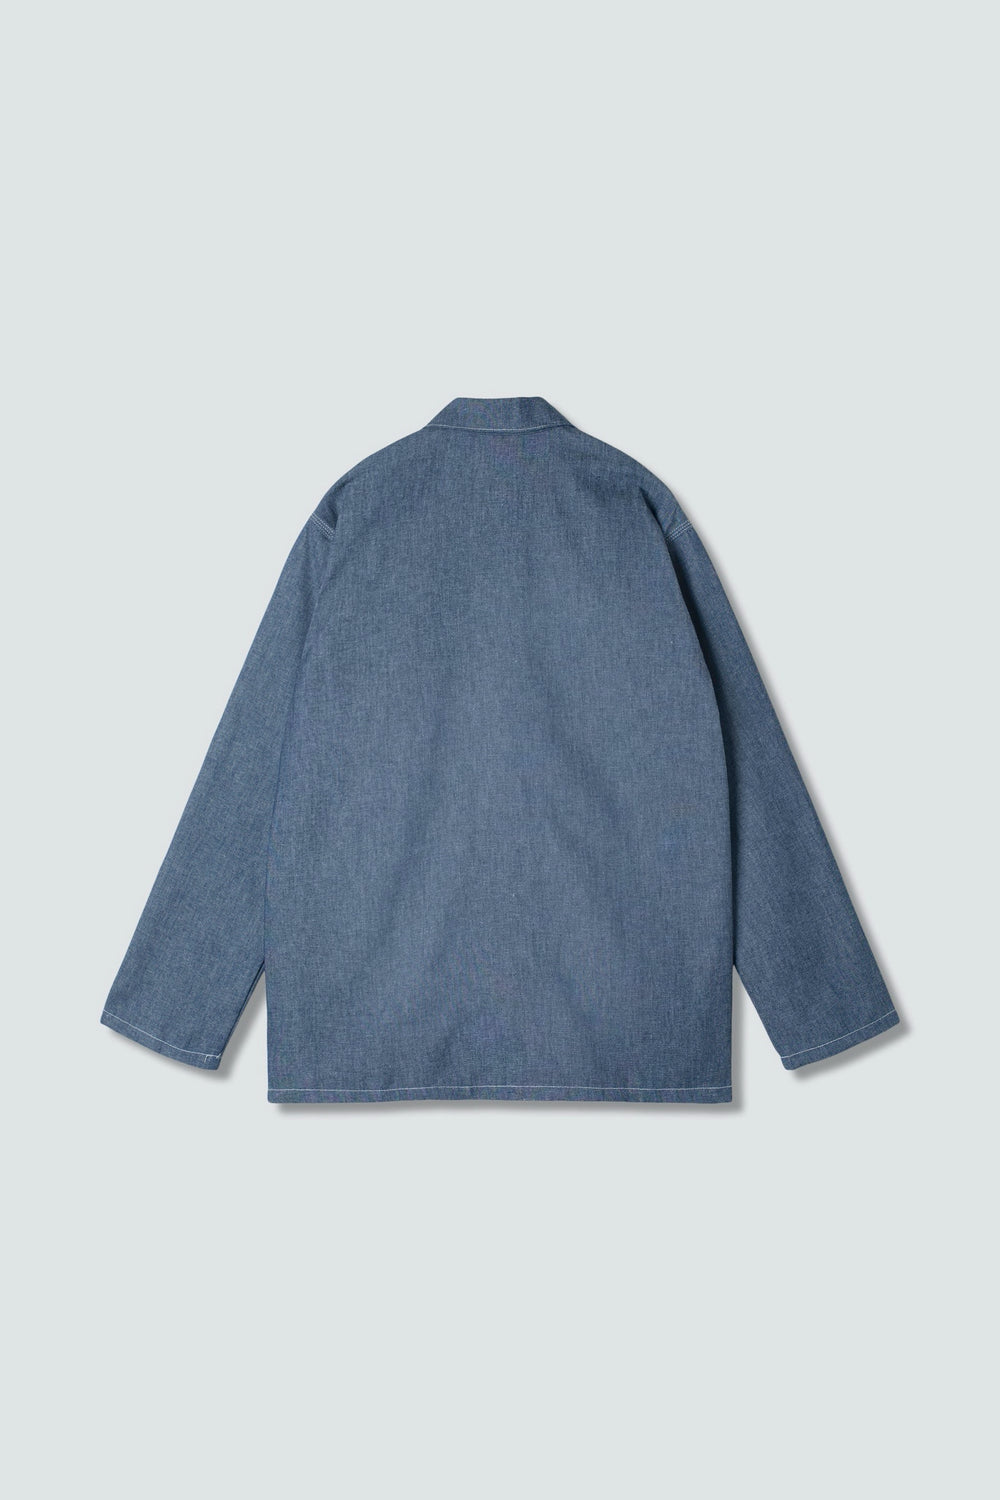 Medium Blue Shop Jacket